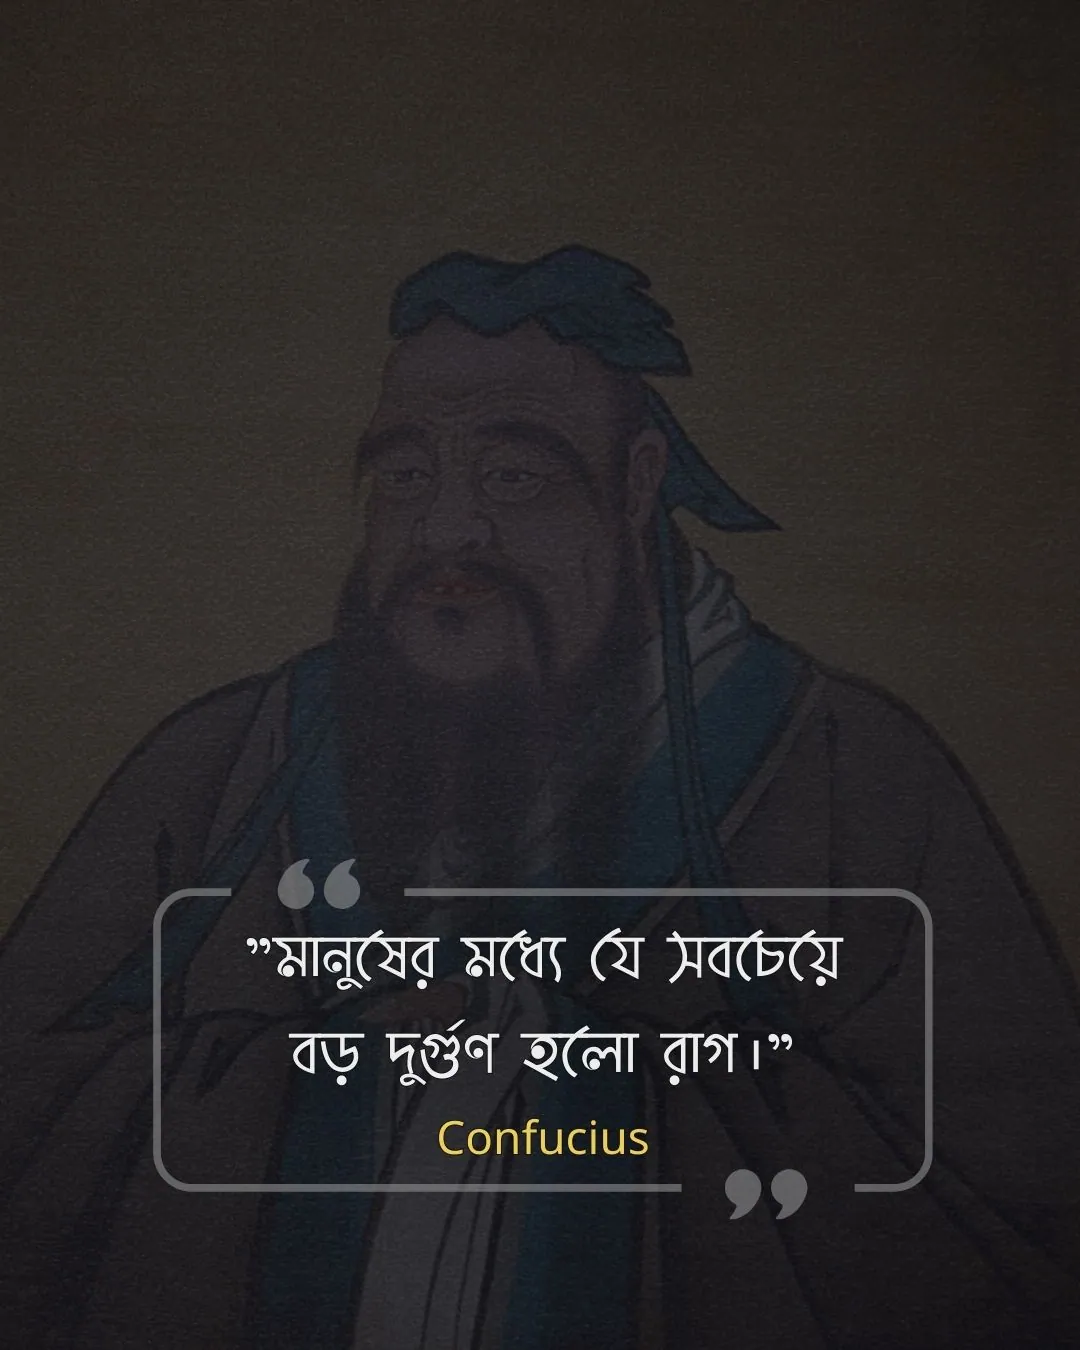 মনুষ্যত্ব নিয়ে উক্তি -Confucius